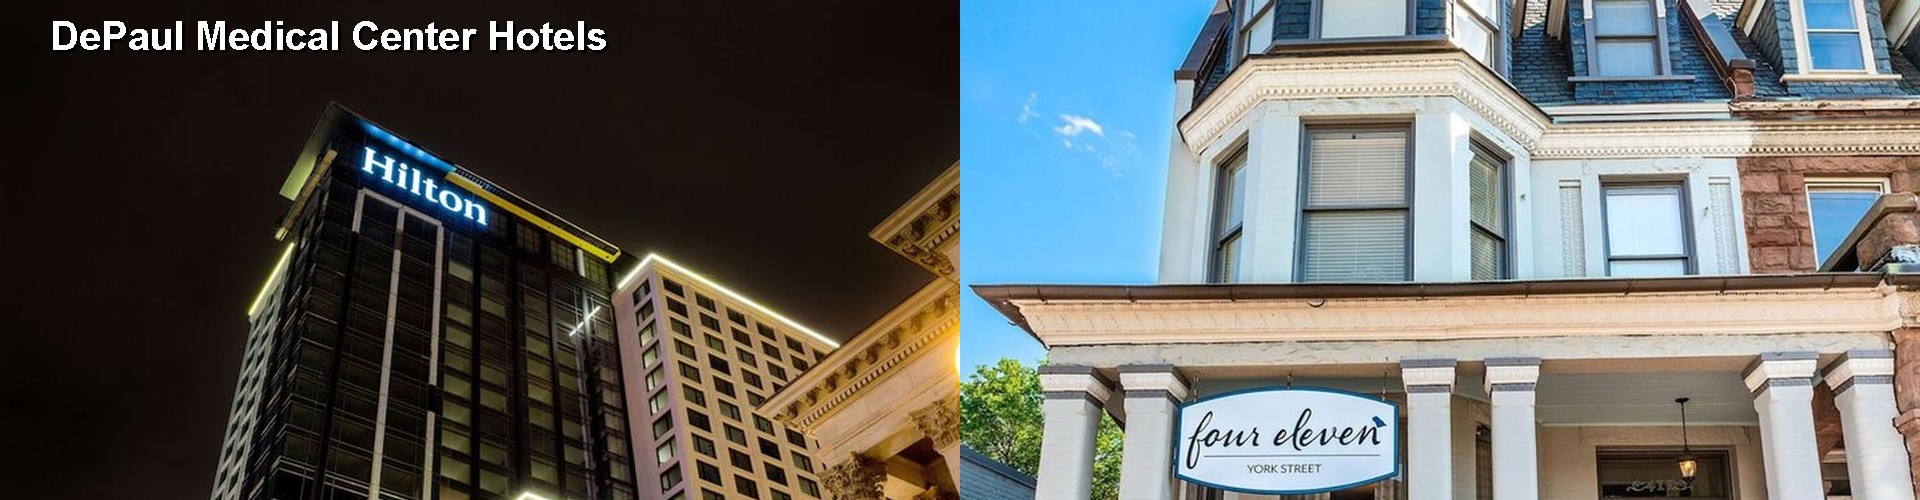 4 Best Hotels near DePaul Medical Center